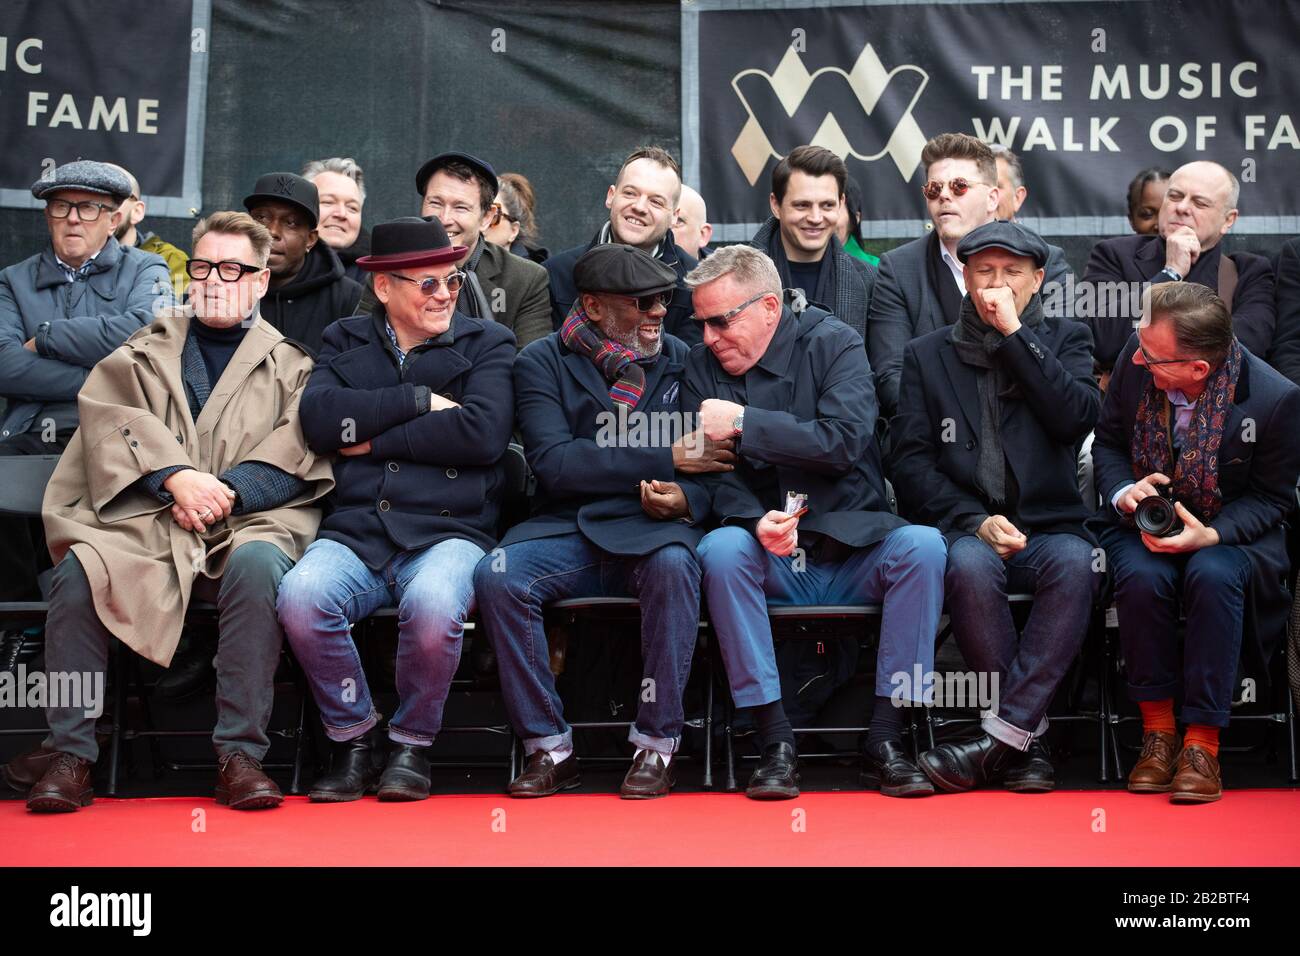 (Von links nach rechts in der ersten Reihe) Chas Smash, Mike Barson, Lynval Golding, Graham McPherson alias Suggs, Mark Bedford und Dan Woodgate während der Enthüllung eines Steins zur Ehrung der Band Madness auf dem Music Walk of Fame in Camden, London. Stockfoto